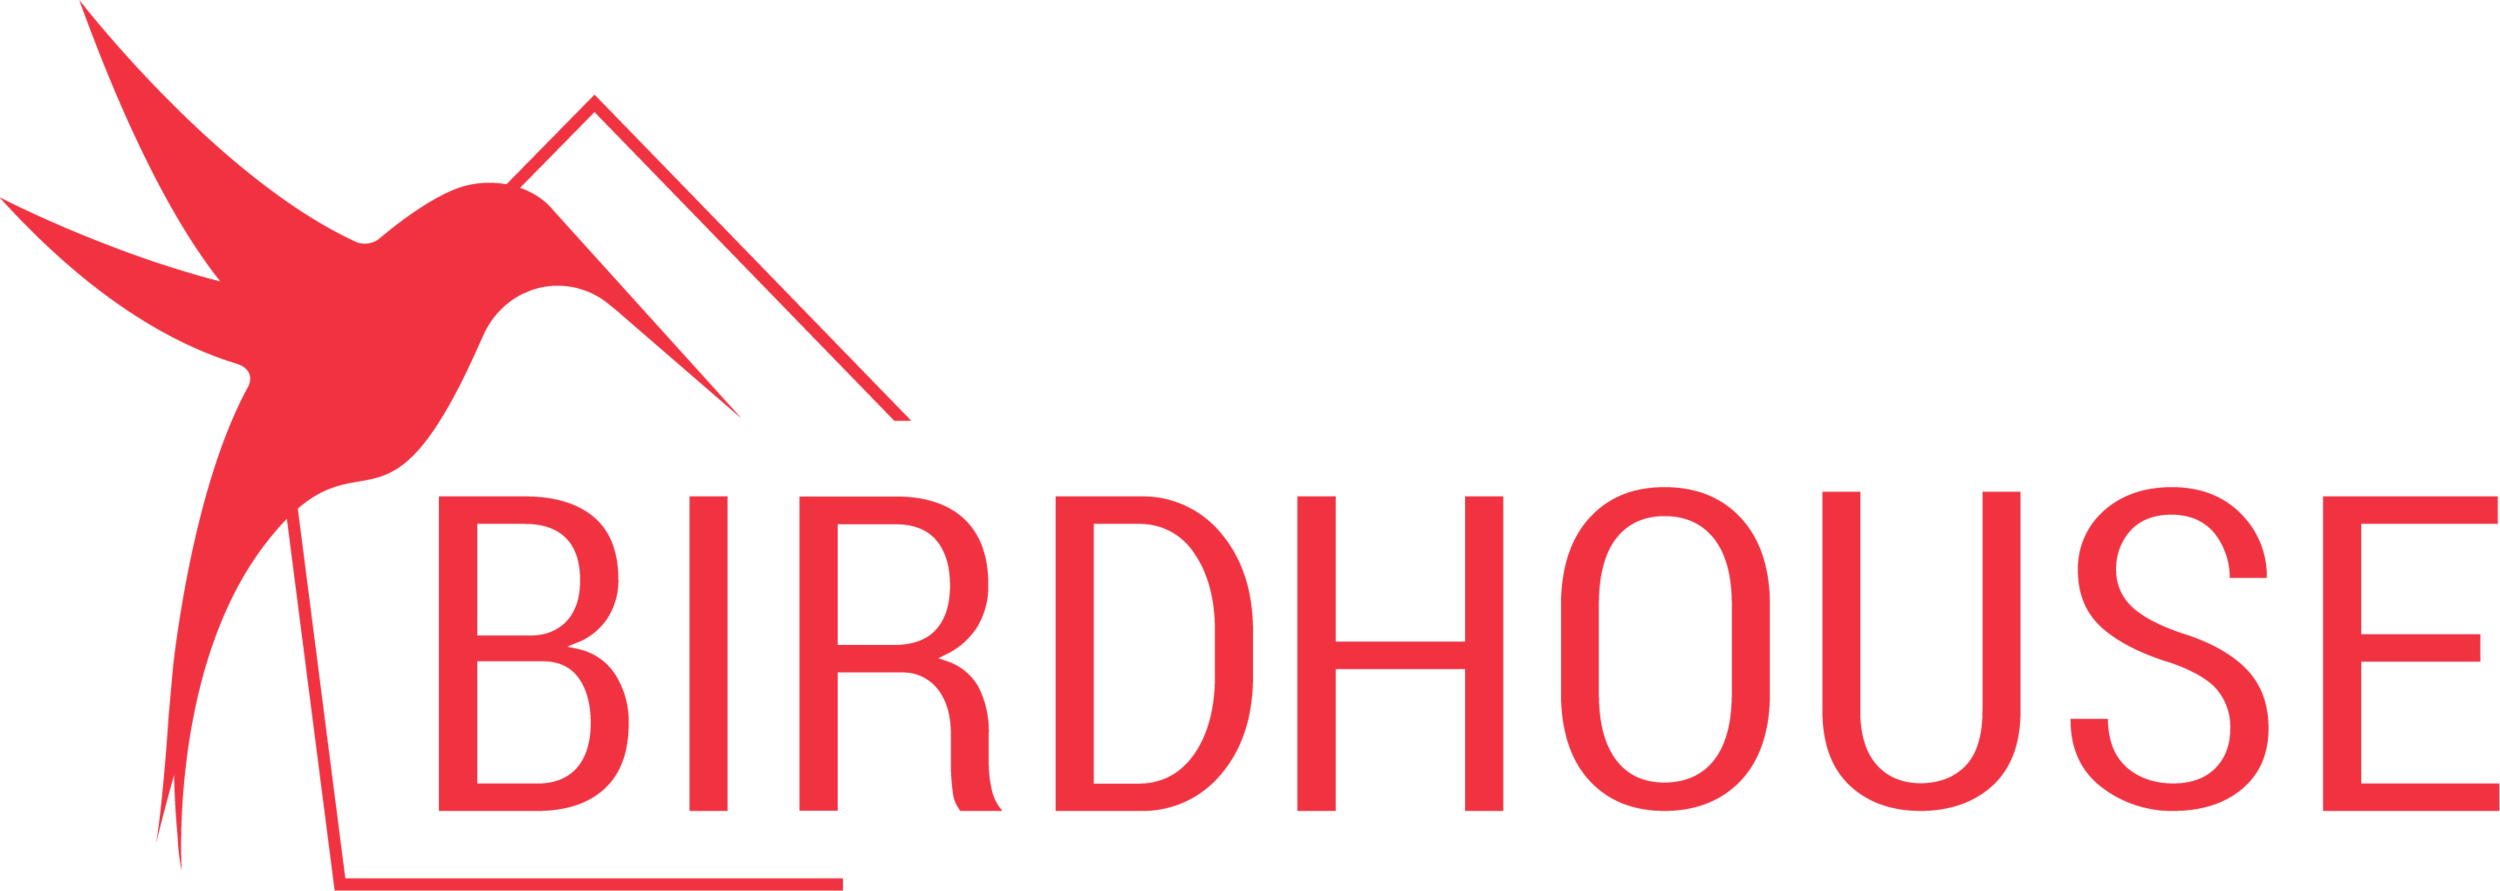 Birdhouse_logo_liggend.png